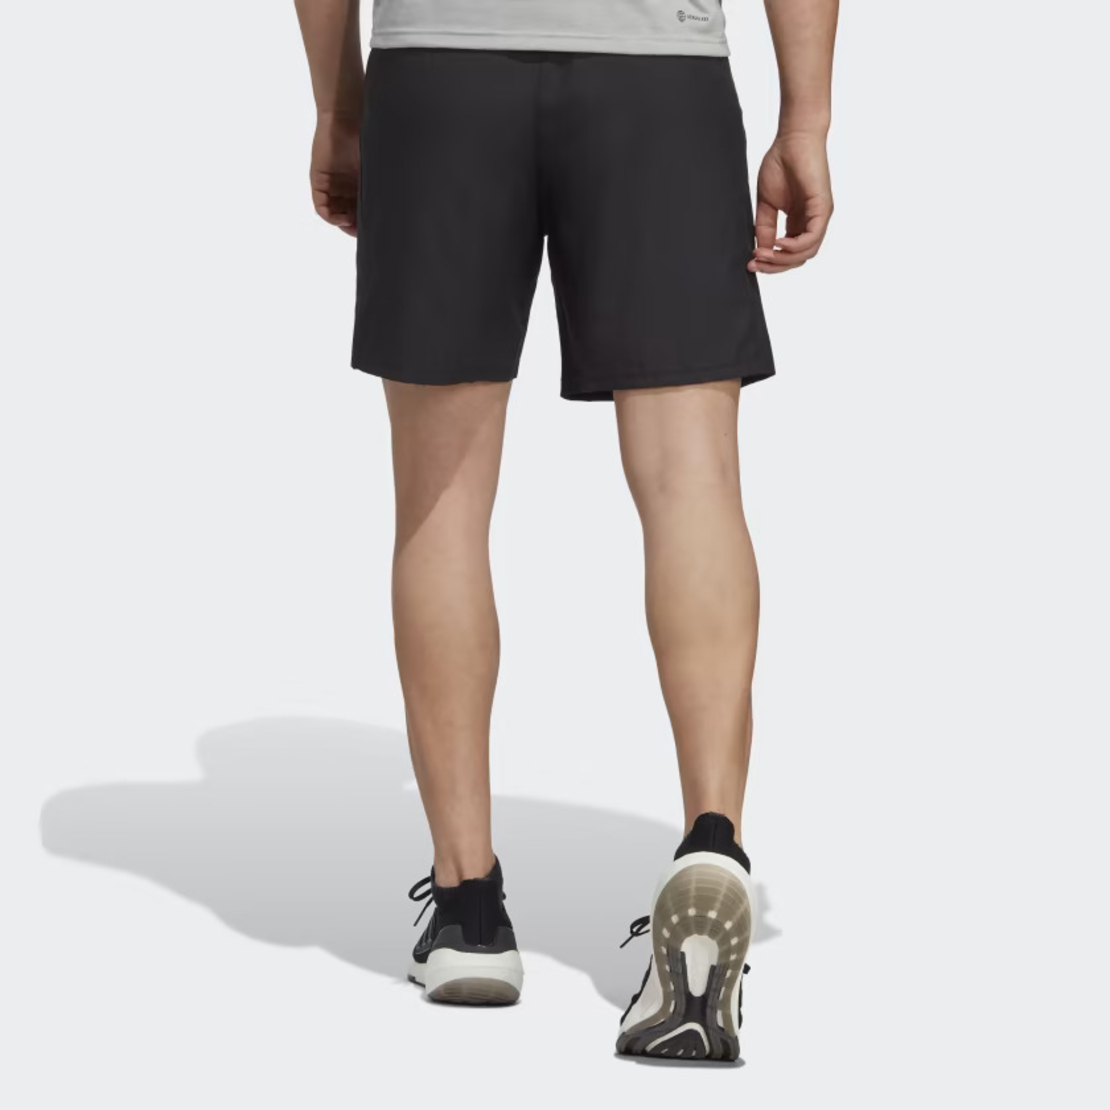 שורט אדידס לגברים | Adidas TR-ES WVN Shorts